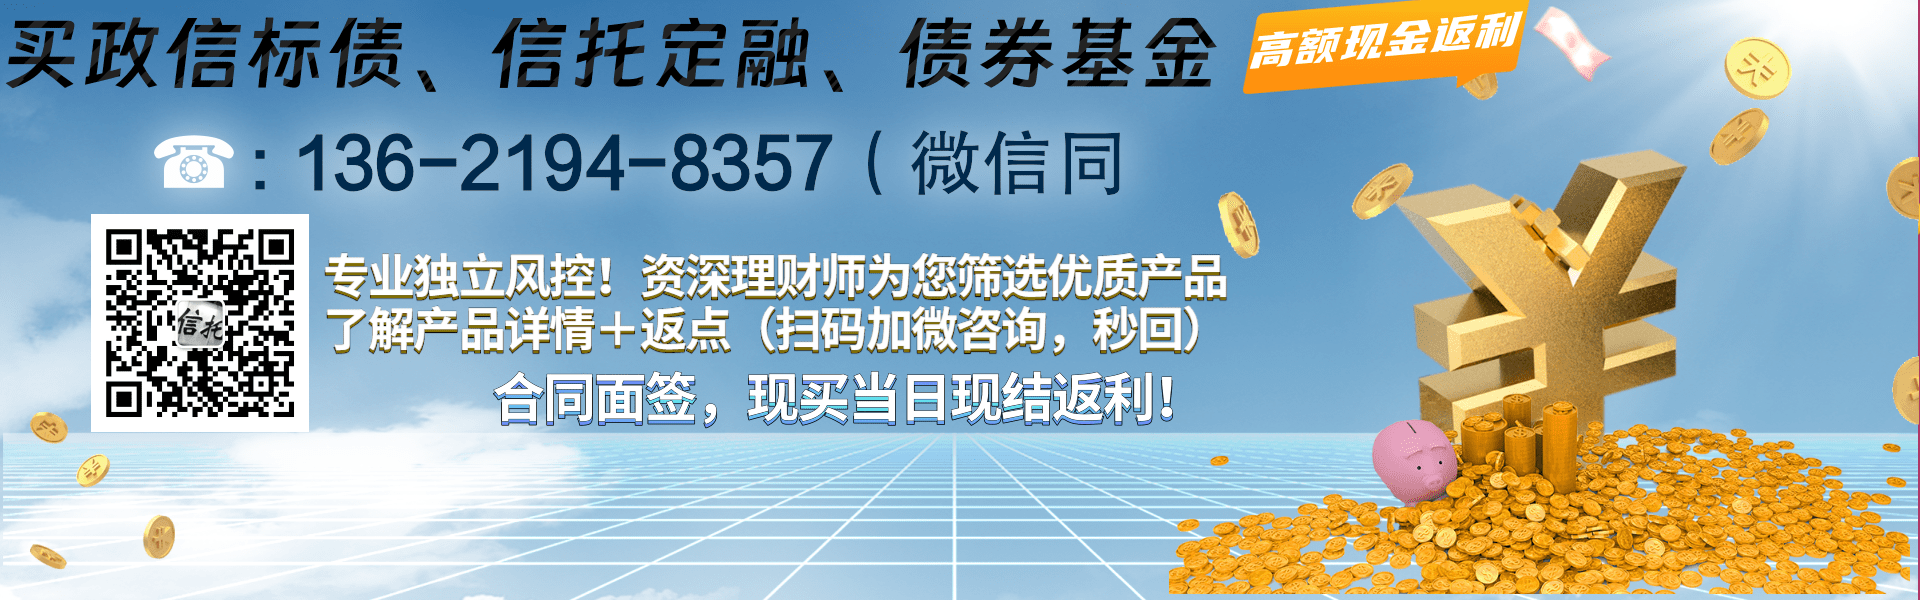 （国企+央企）信托-重庆沙坪坝非标集合资金信托计划